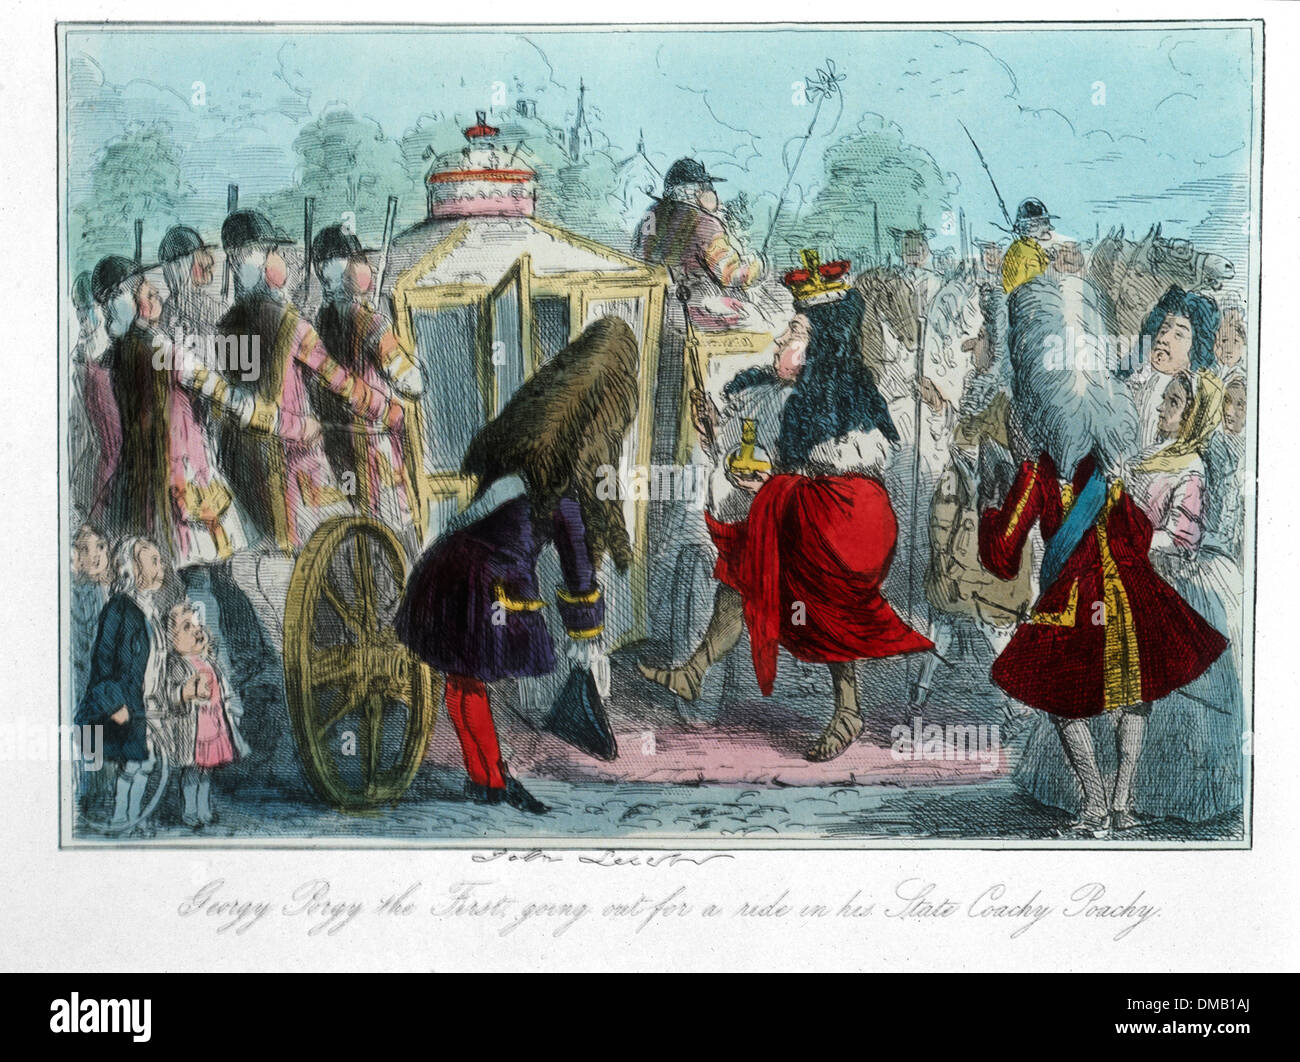 Georgy Porgy der ersten ausgehen für eine Fahrt in seinem Staat Coachy Poachy, Comic-Geschichte von England, Radierung von John Leech, 1850 Stockfoto